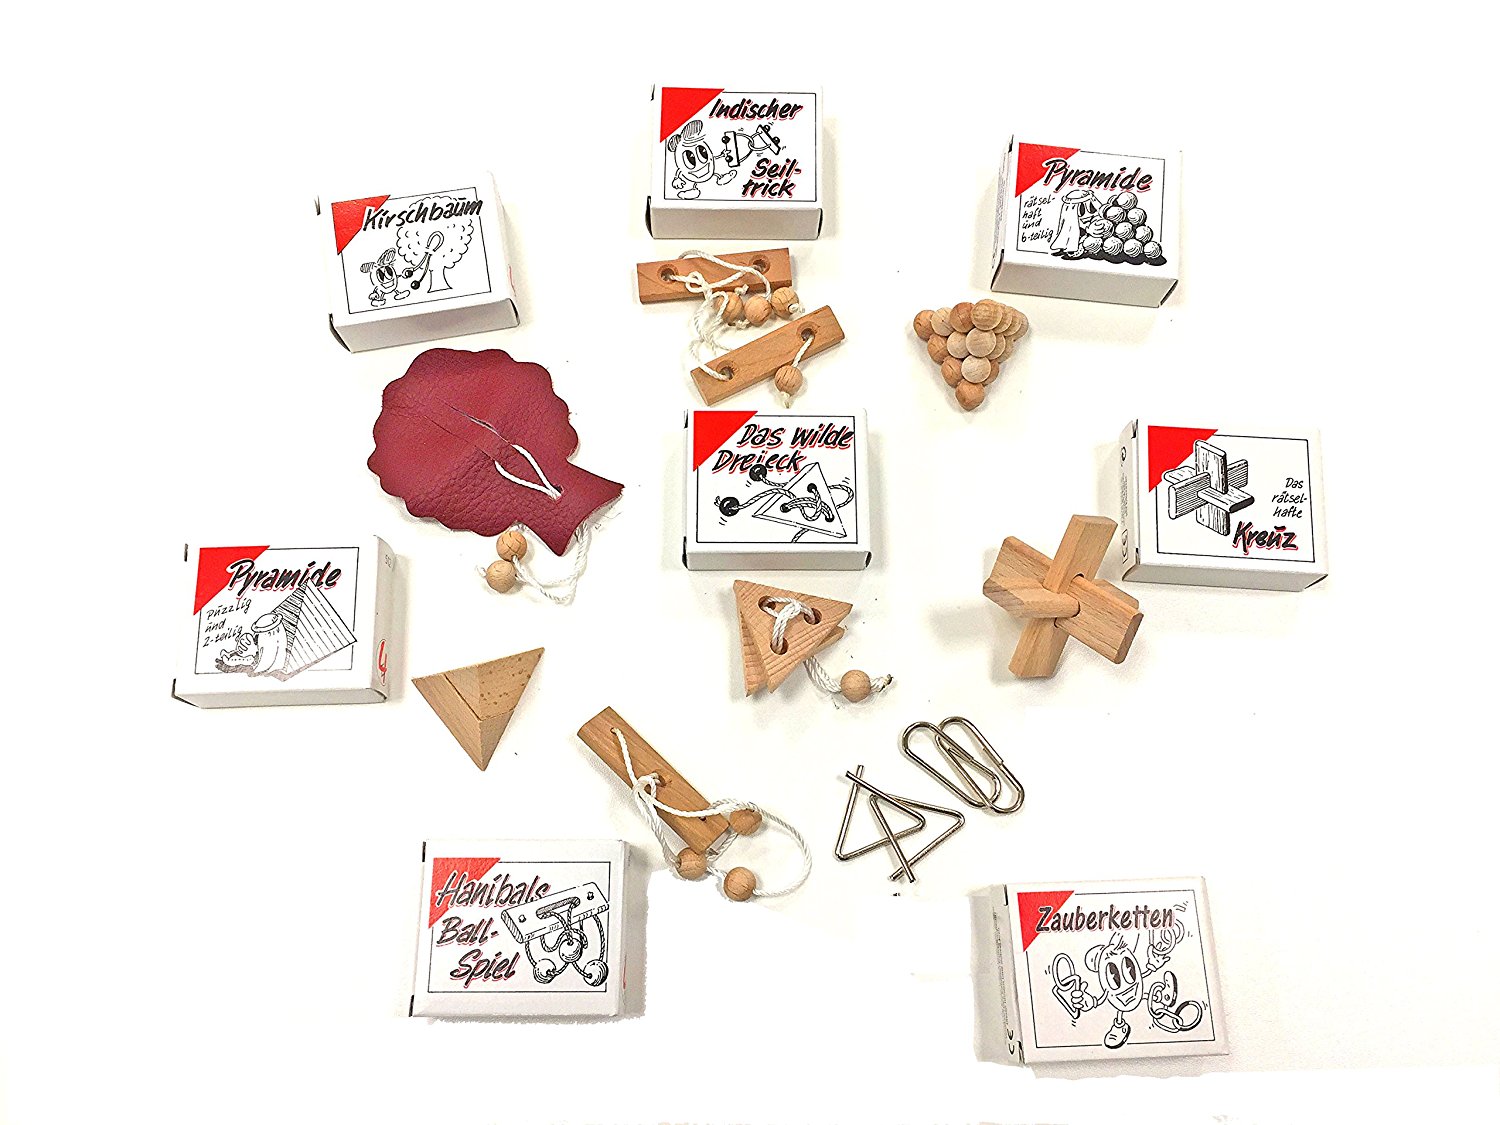 8 beliebte Knobelspiel Klassiker - Geduldspiele im Set - einzeln verpackt mit Lösungsheft - als Geschenk oder für den Adventskalender lose - 2185